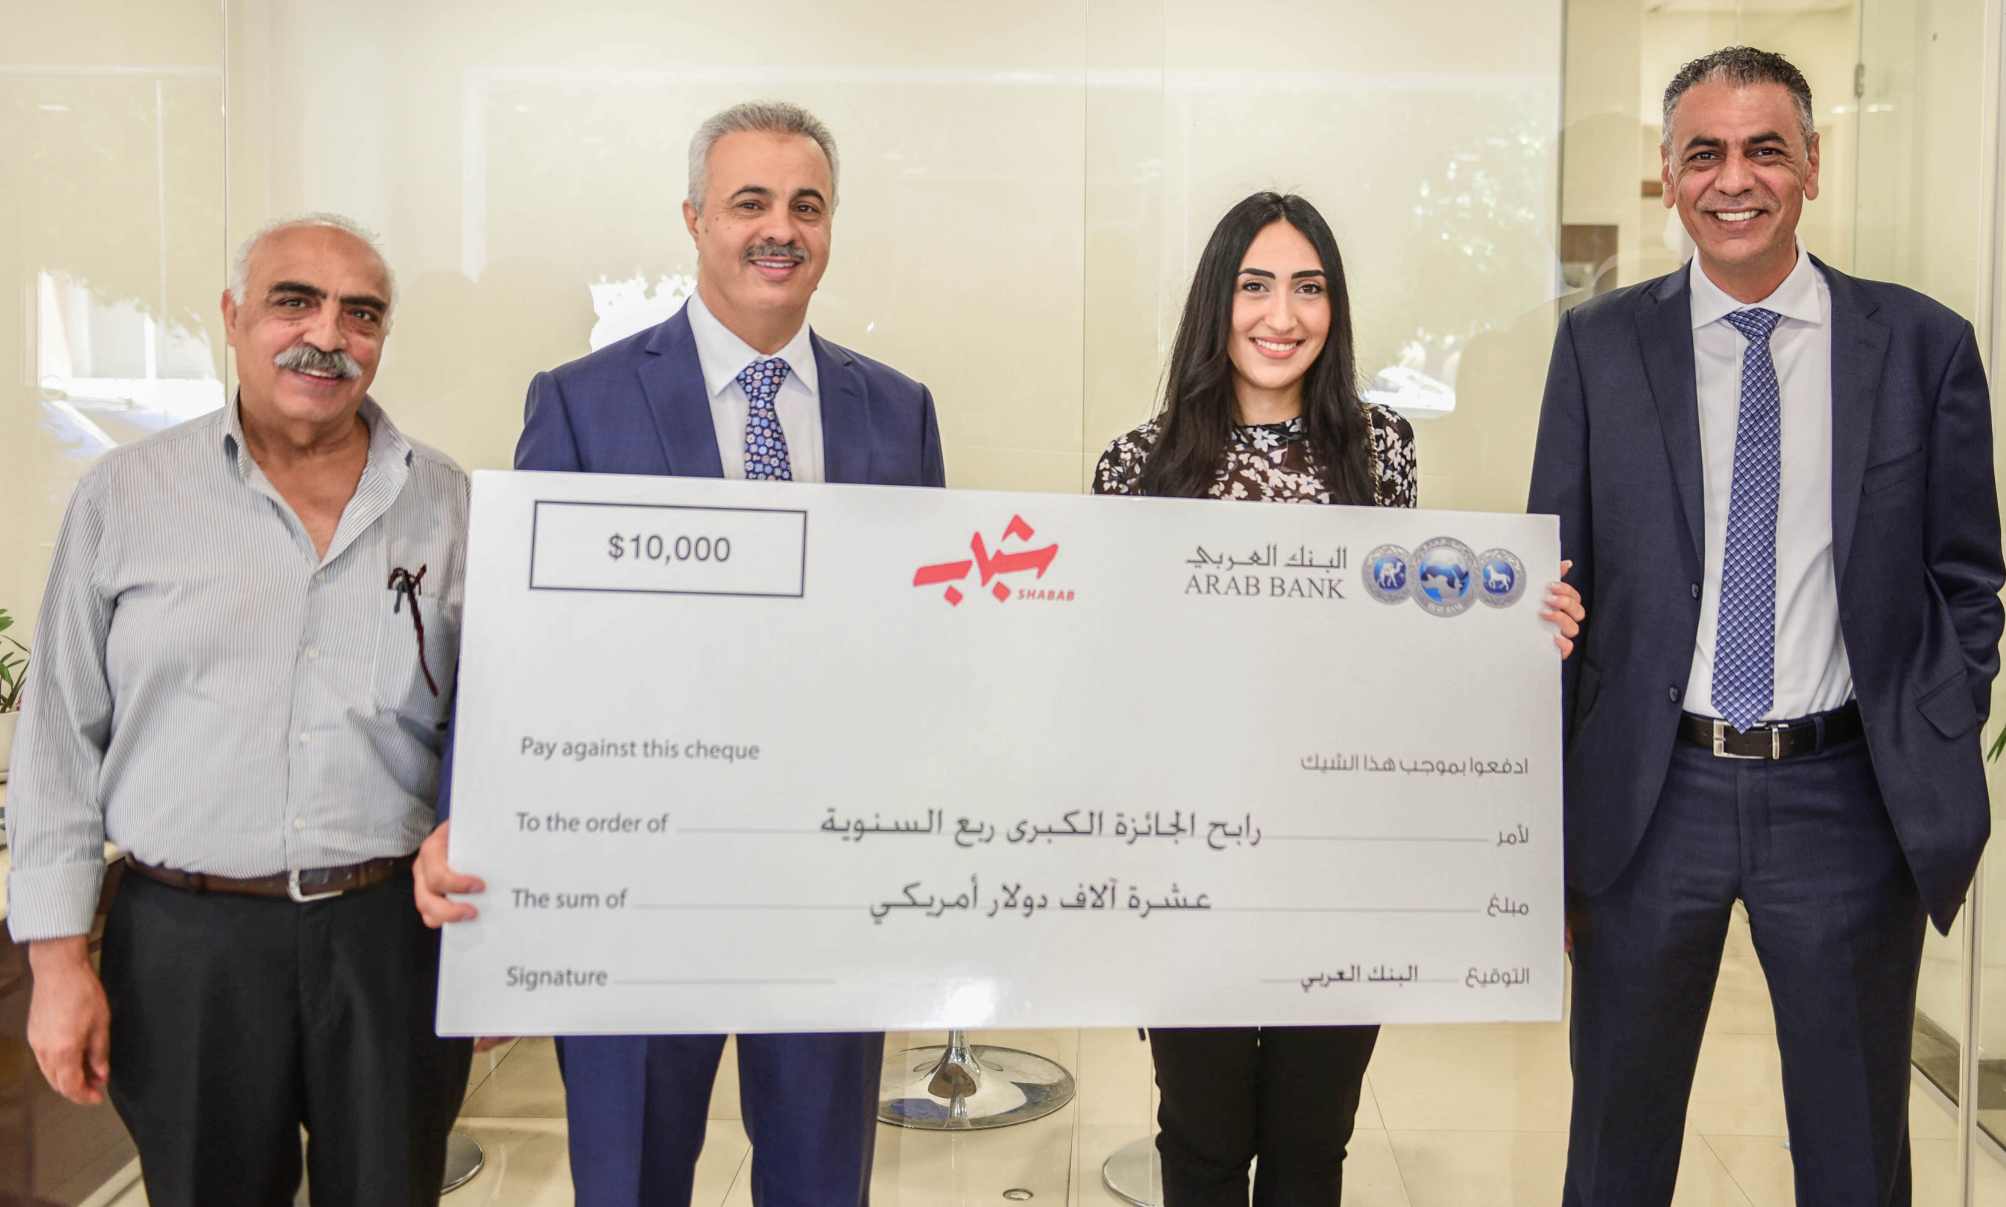 البنك العربي يسلم جائزة الـ 10,000 دولار للفائزة ضمن جوائز برنامج "شباب"